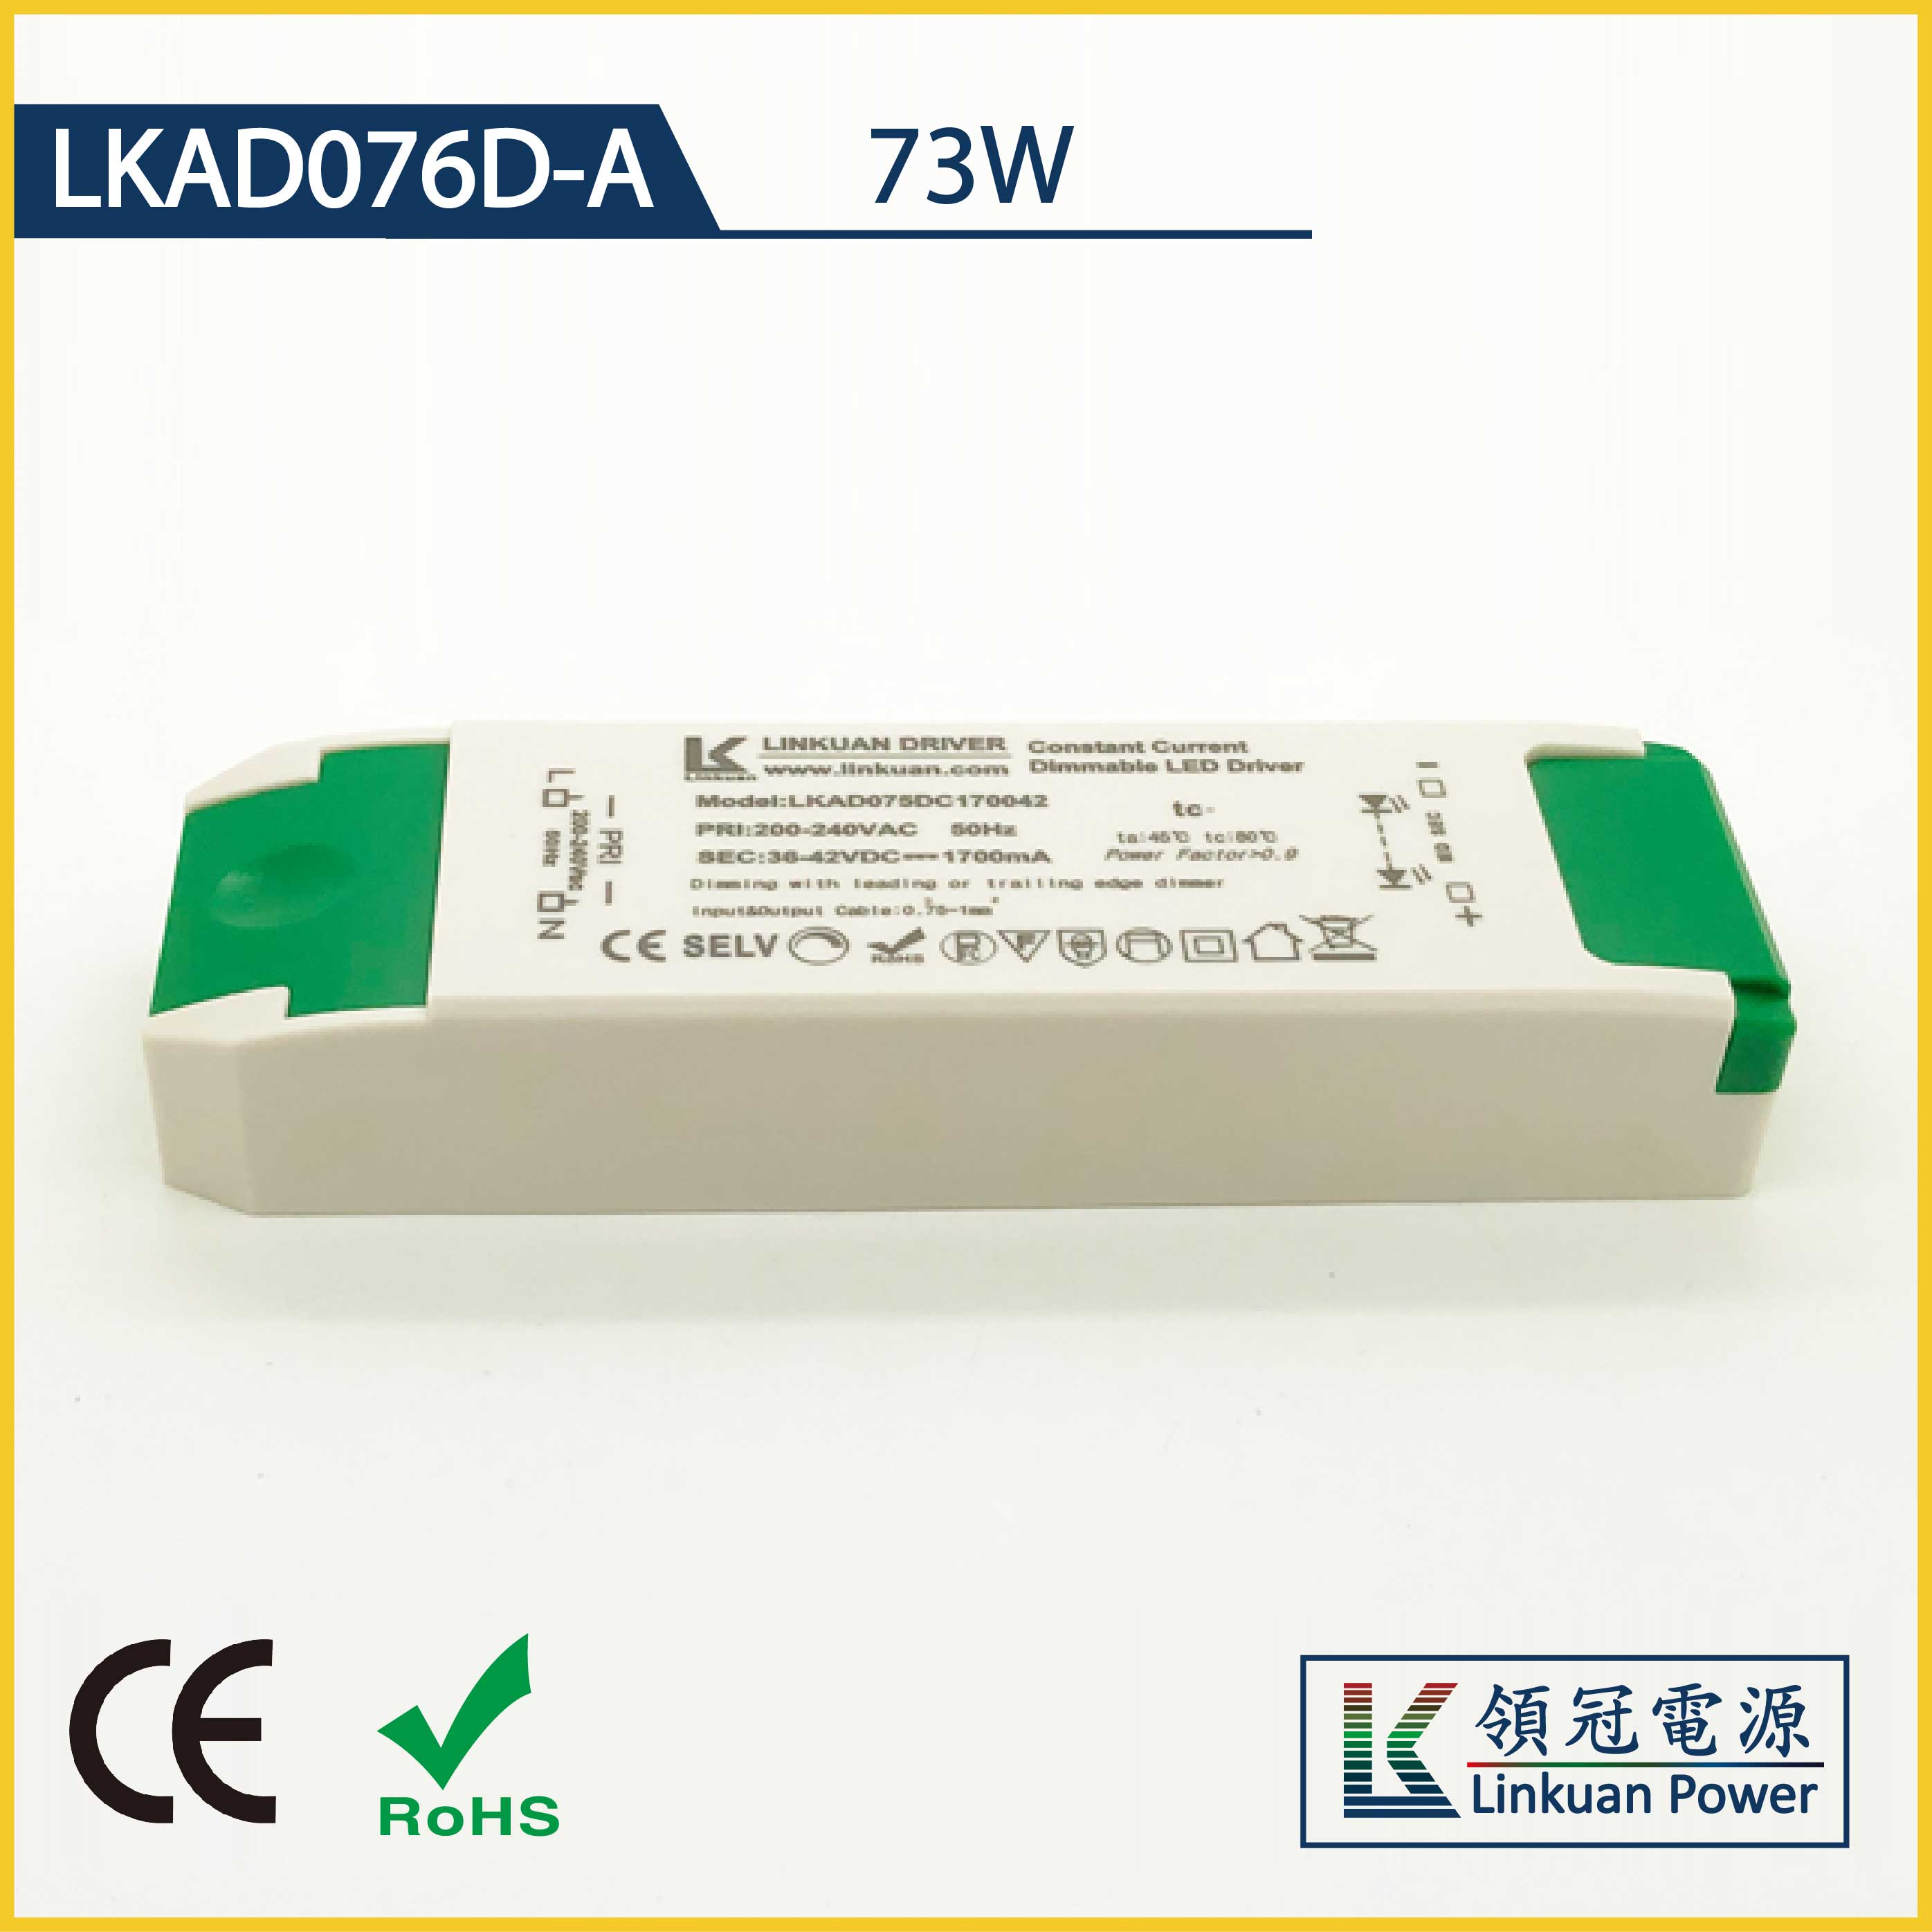 LKAD076D-A 73W 5-42V 1750mA CCT Adjusting LED drivers